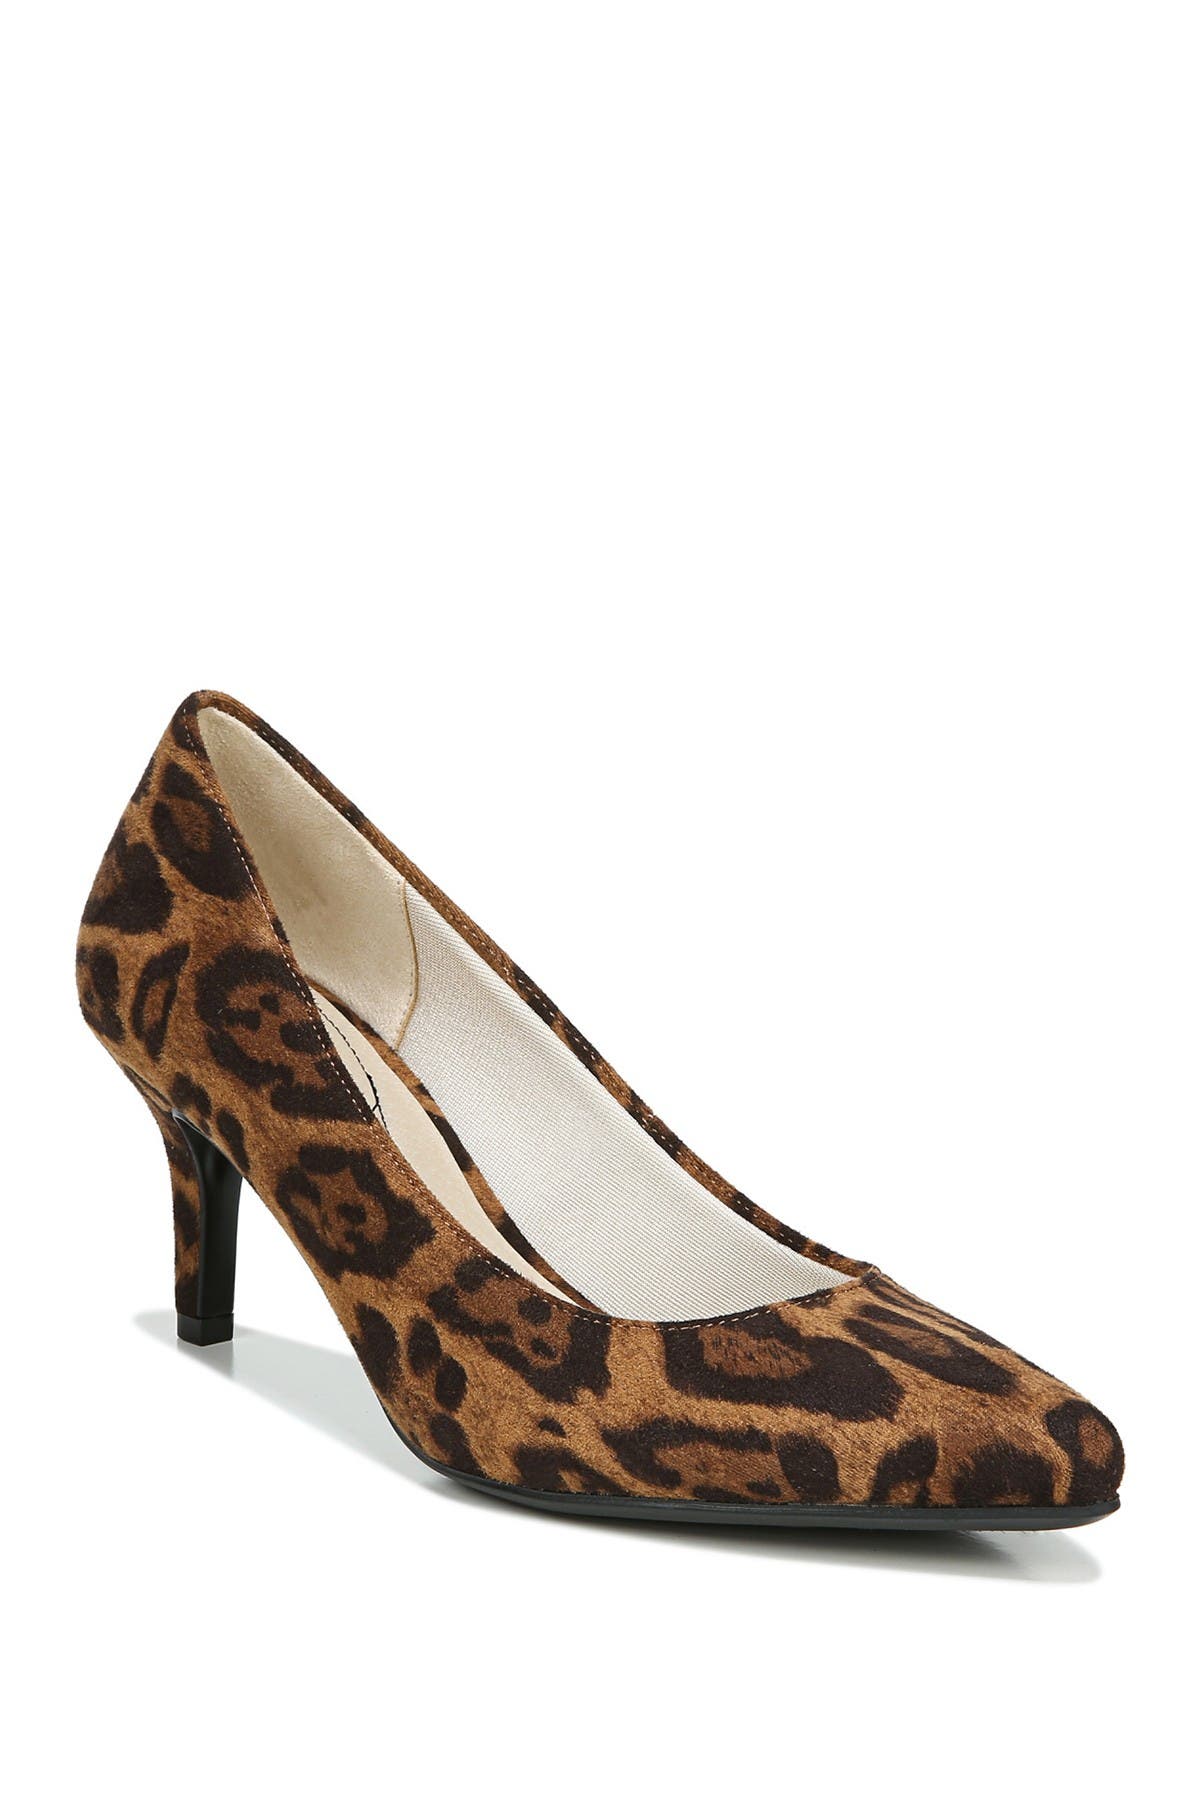 leopard print heels wide width